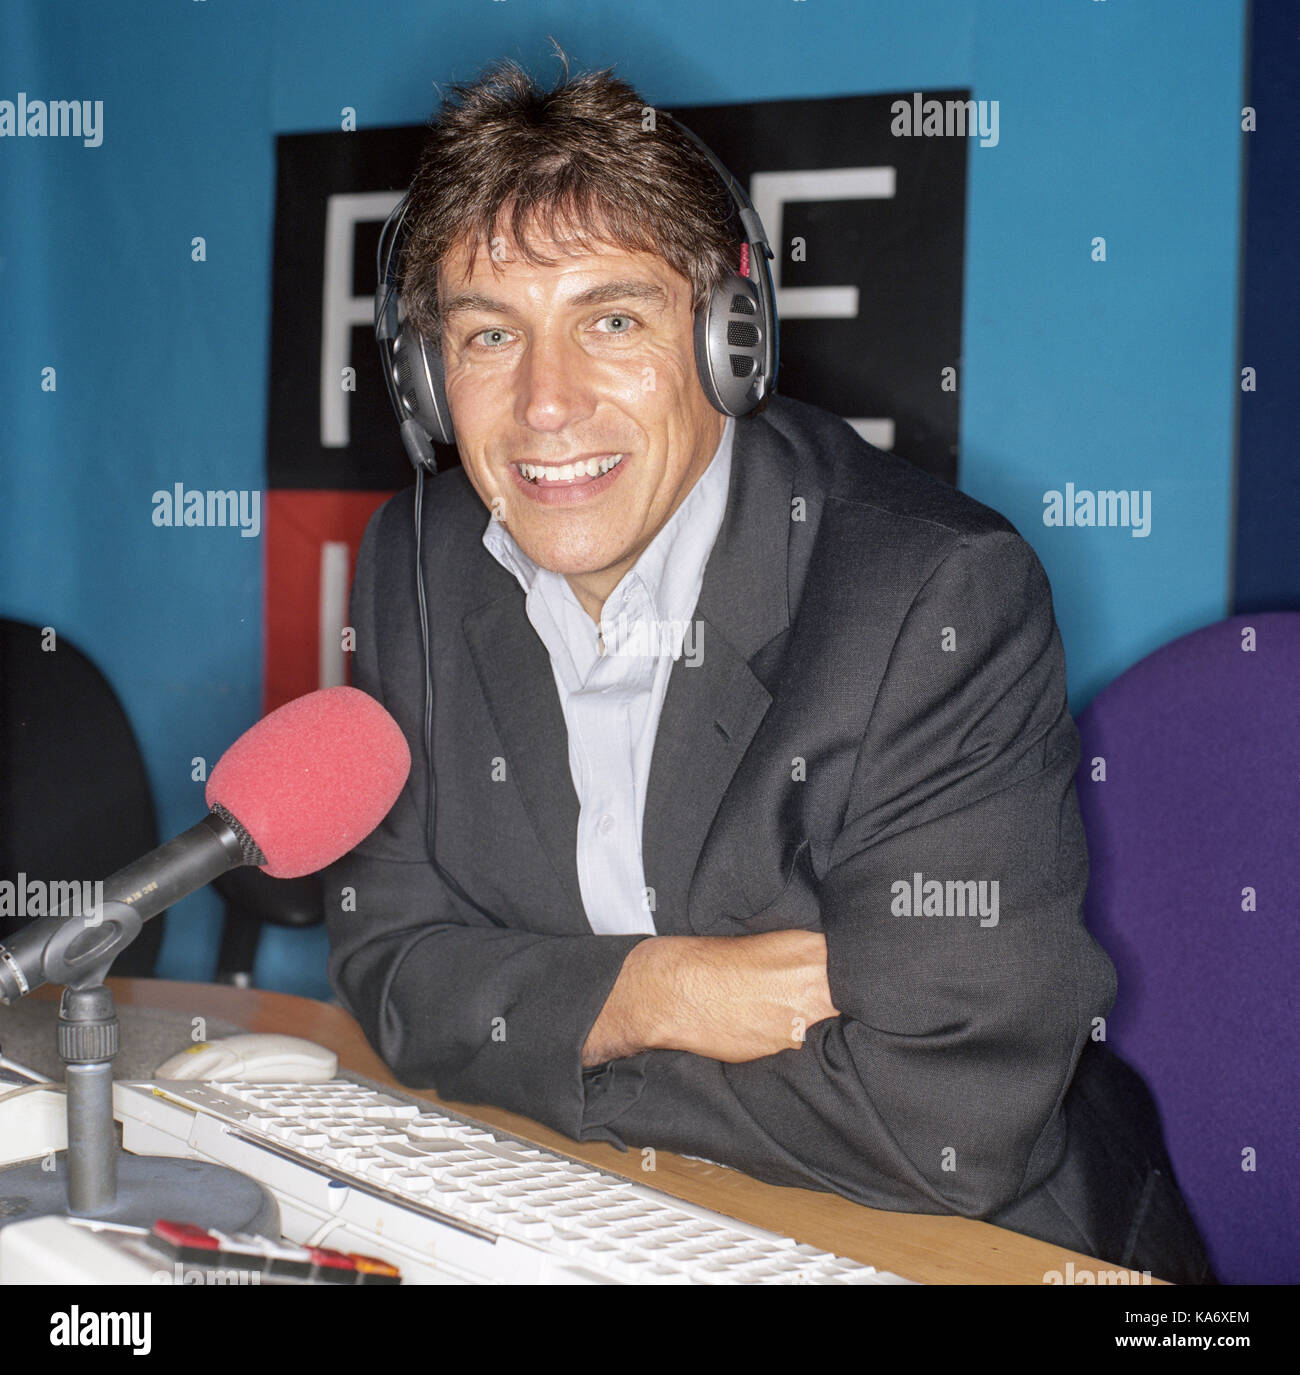 John inverdale photographié à la BBC Five Live studio Banque D'Images